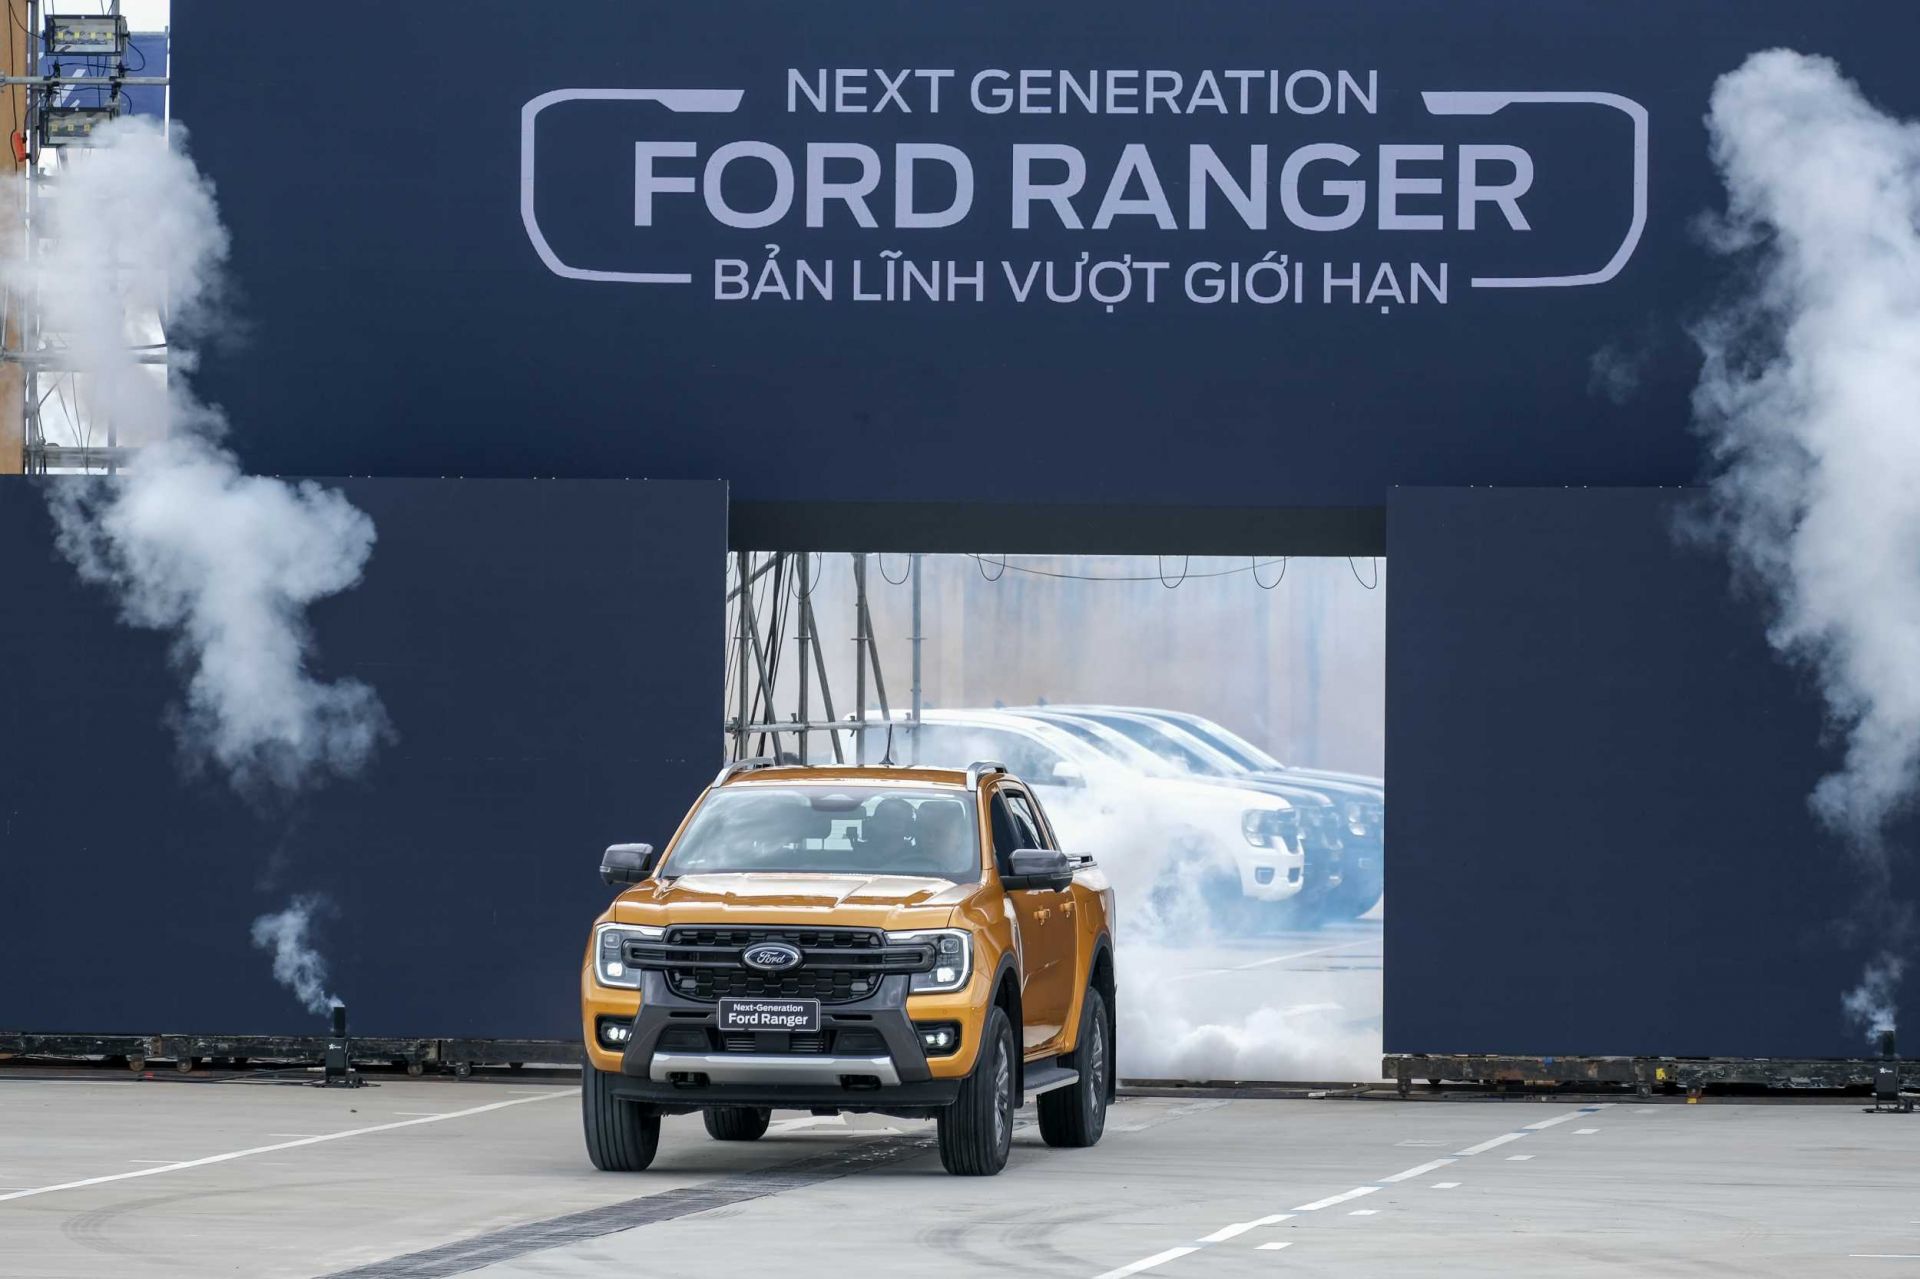 Ford Ranger Thế hệ mới hôm nay đã chính thức ra mắt thị trường Việt với 4 phiên bản Wildtrak, XLT, XLS và XL